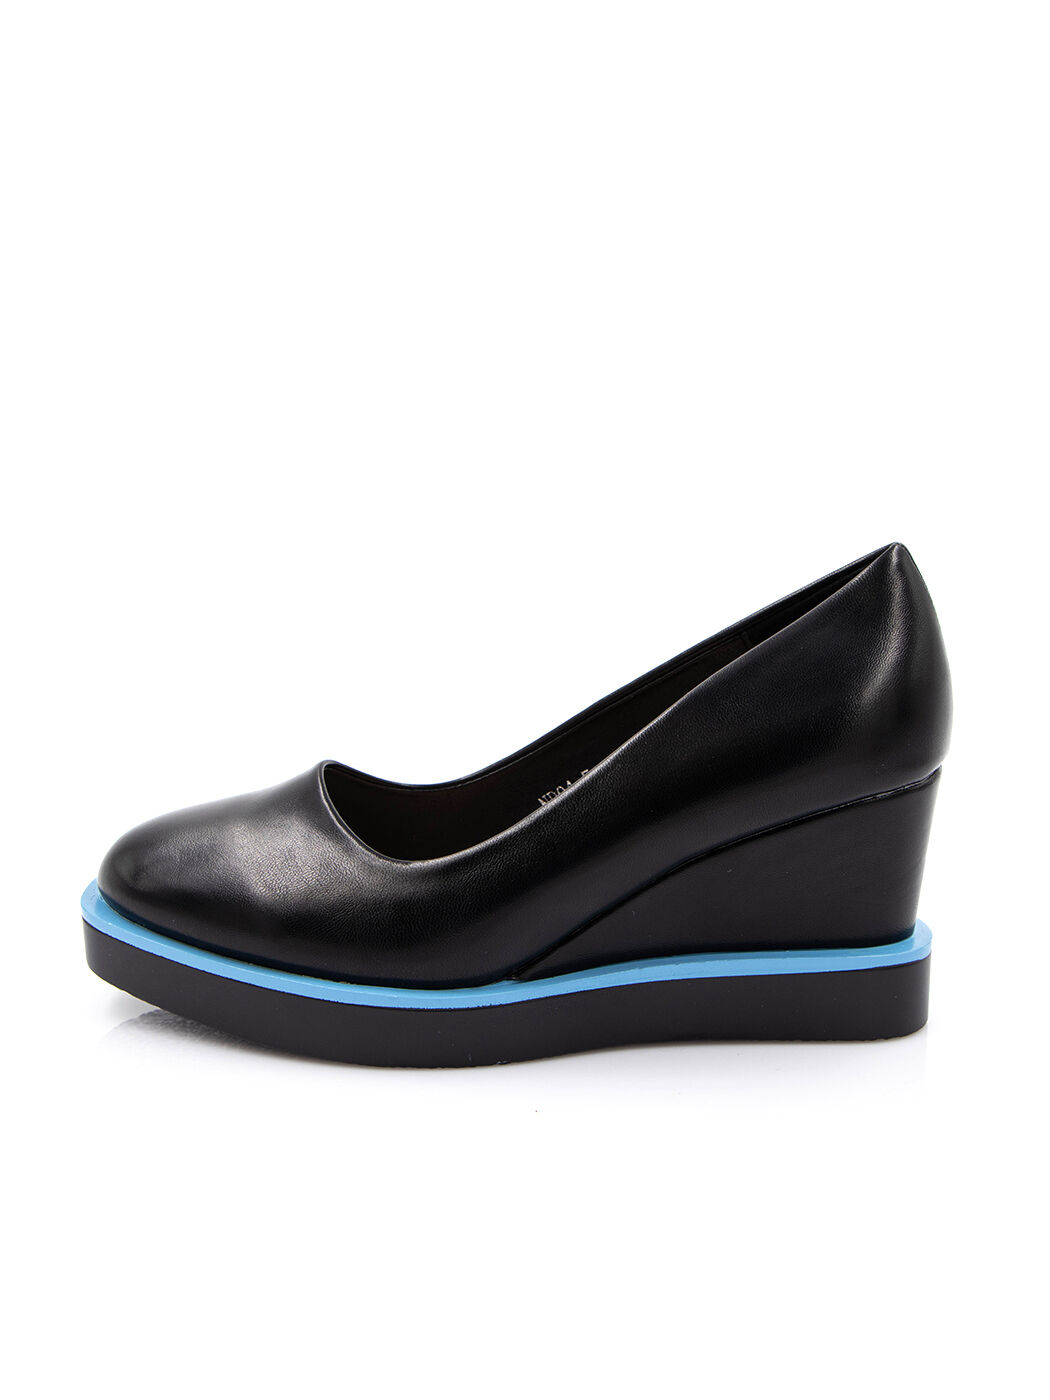 Туфли женские черные экокожа каблук устойчивый демисезон от производителя 5M